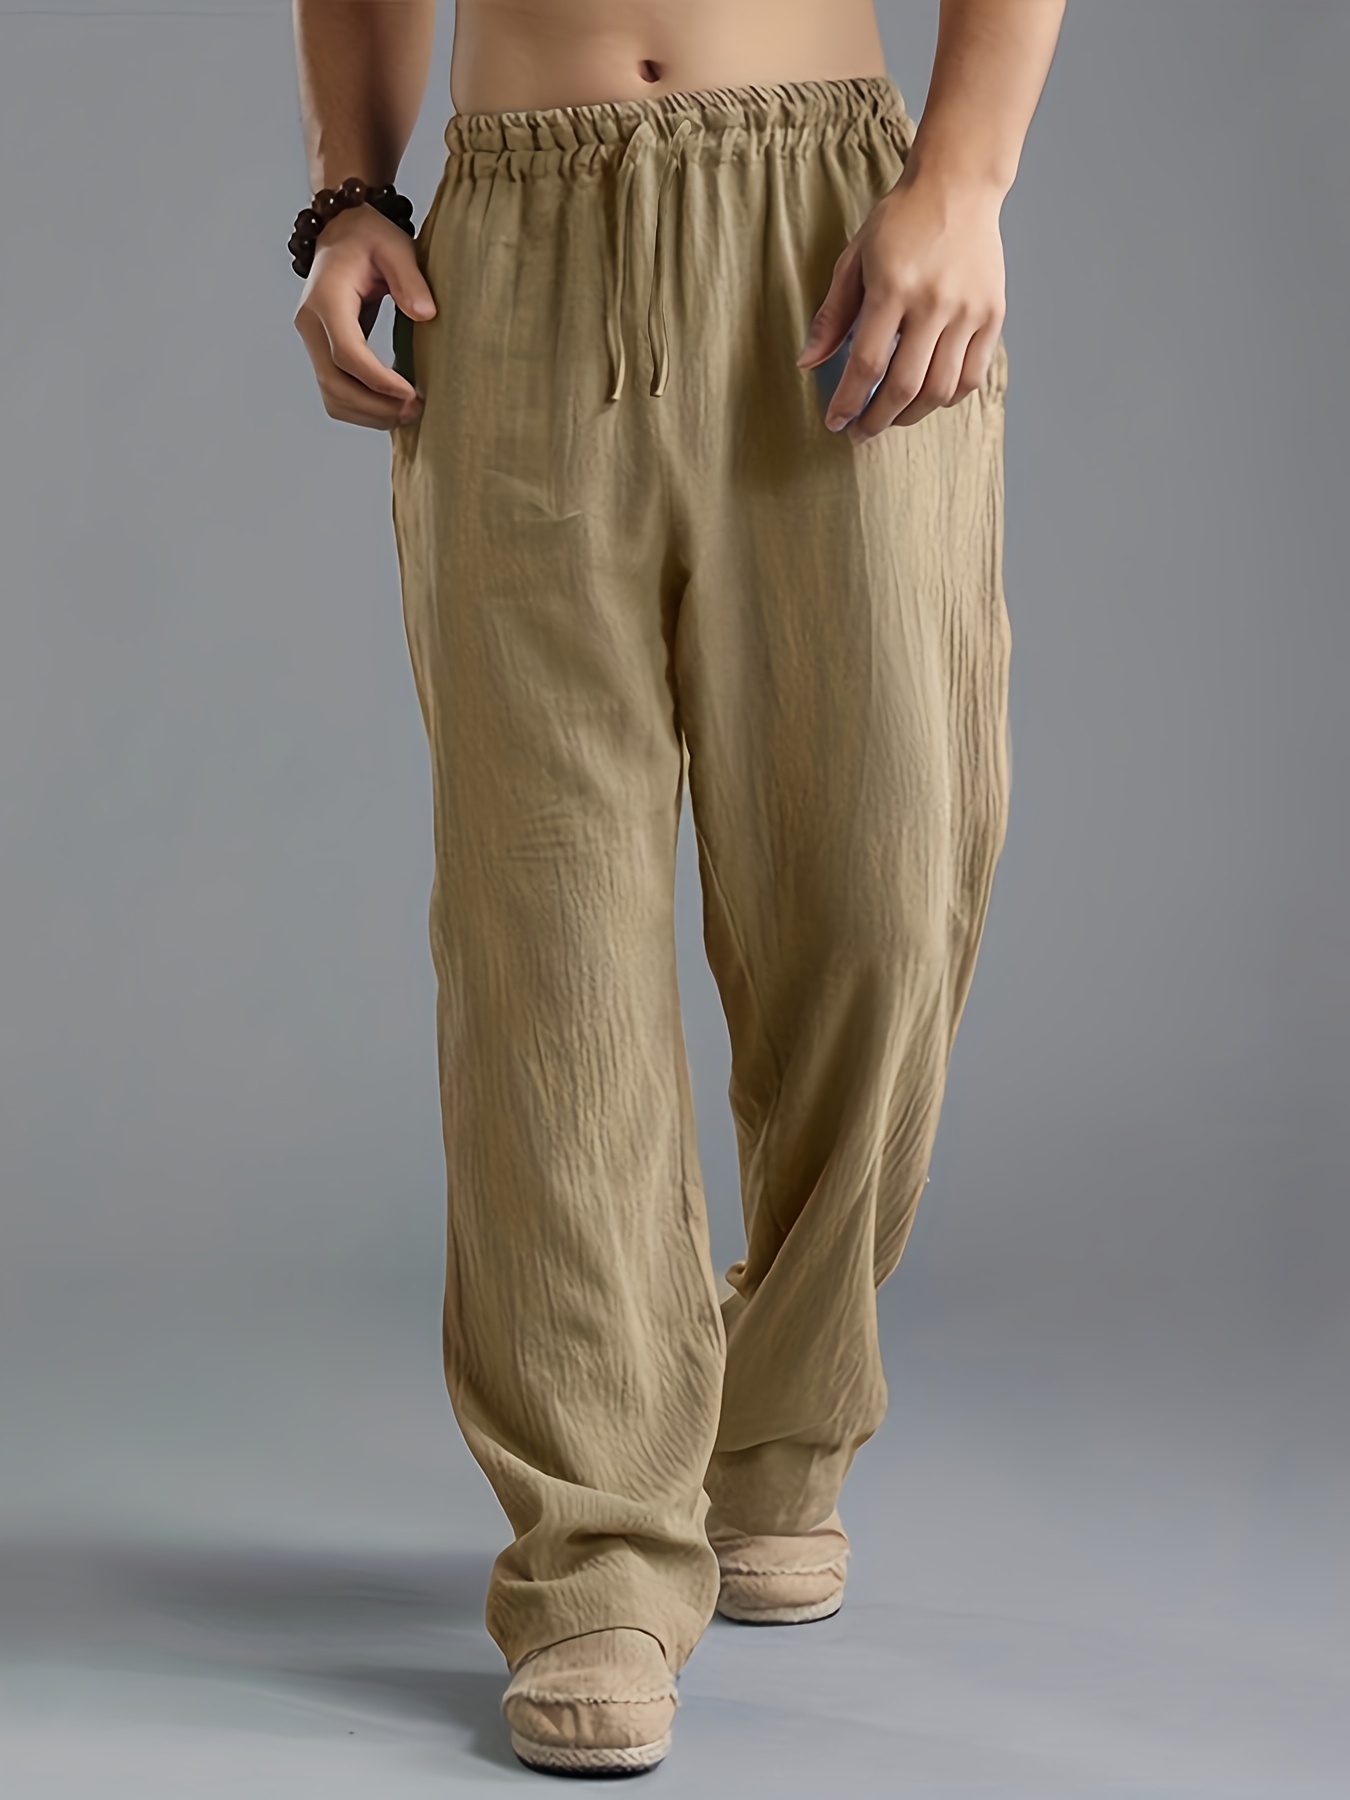 Comprar Pantalones Harem casuales de verano para hombre Pantalones jogger  de lino y algodón